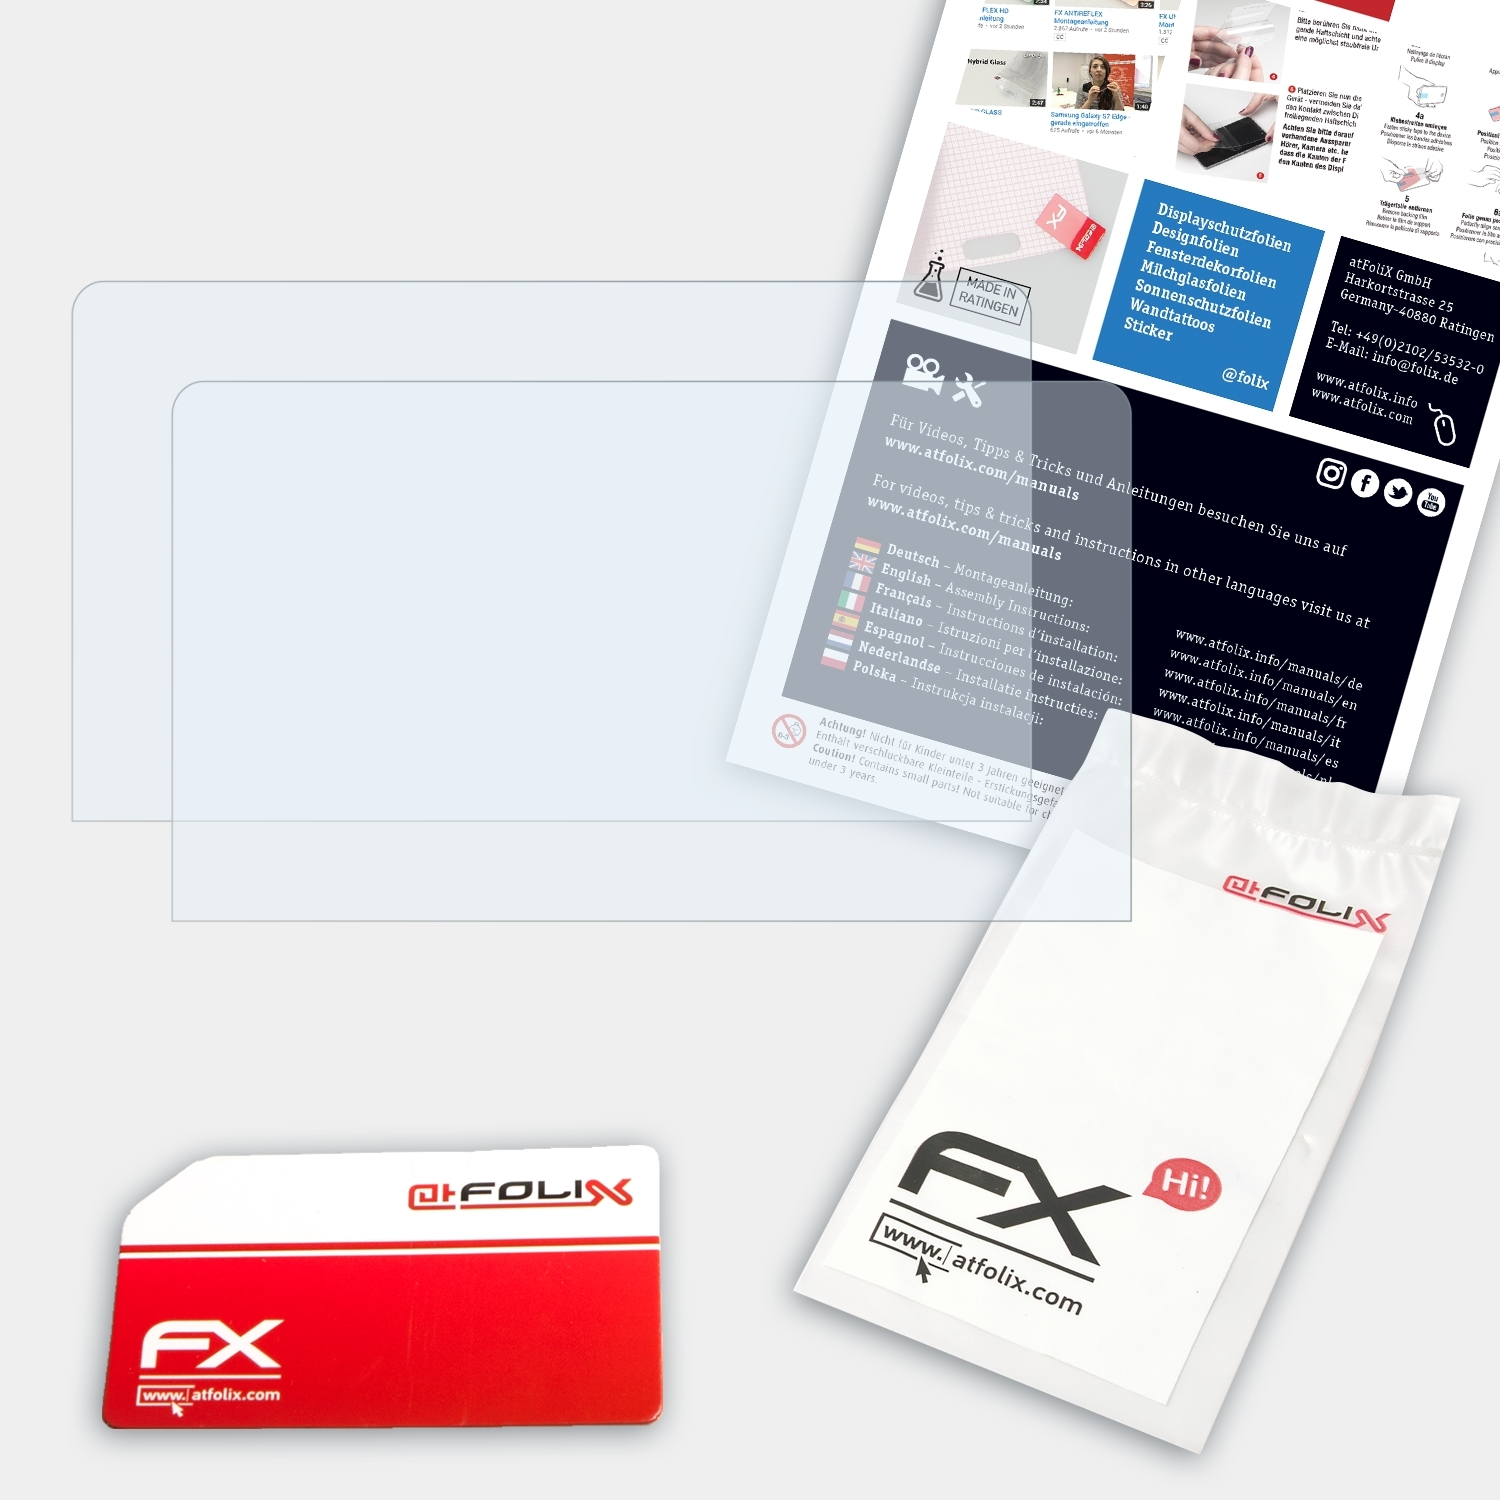 ATFOLIX 2x FX-Clear One-Netbook OneMix Displayschutz(für 2)